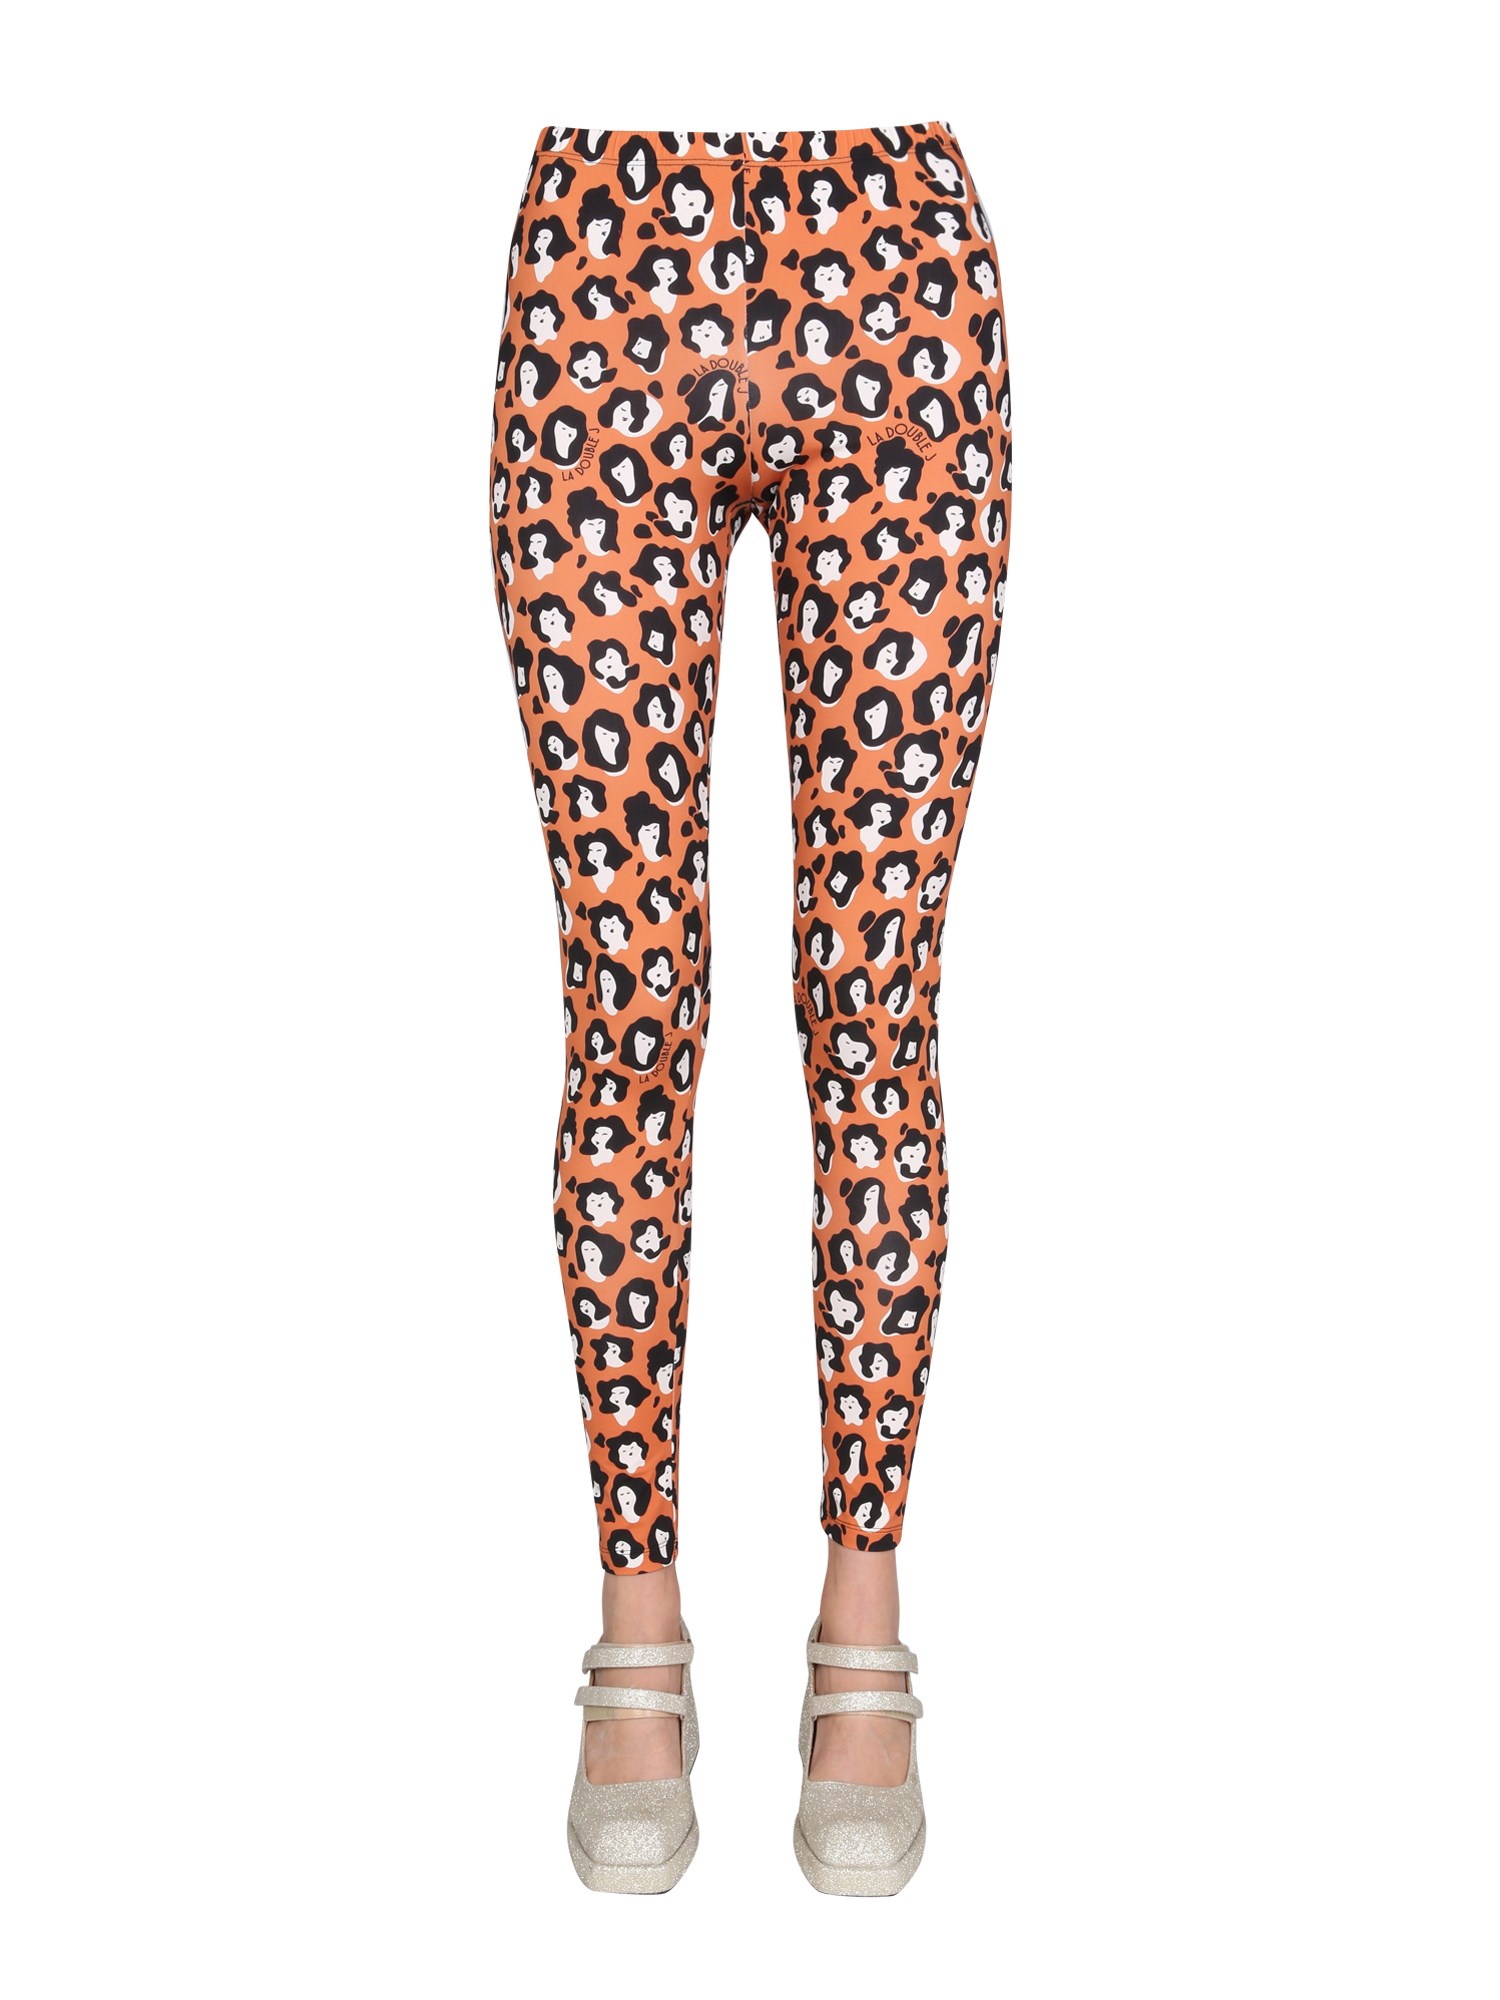 La Doublej la doublej "lady leopard" leggings